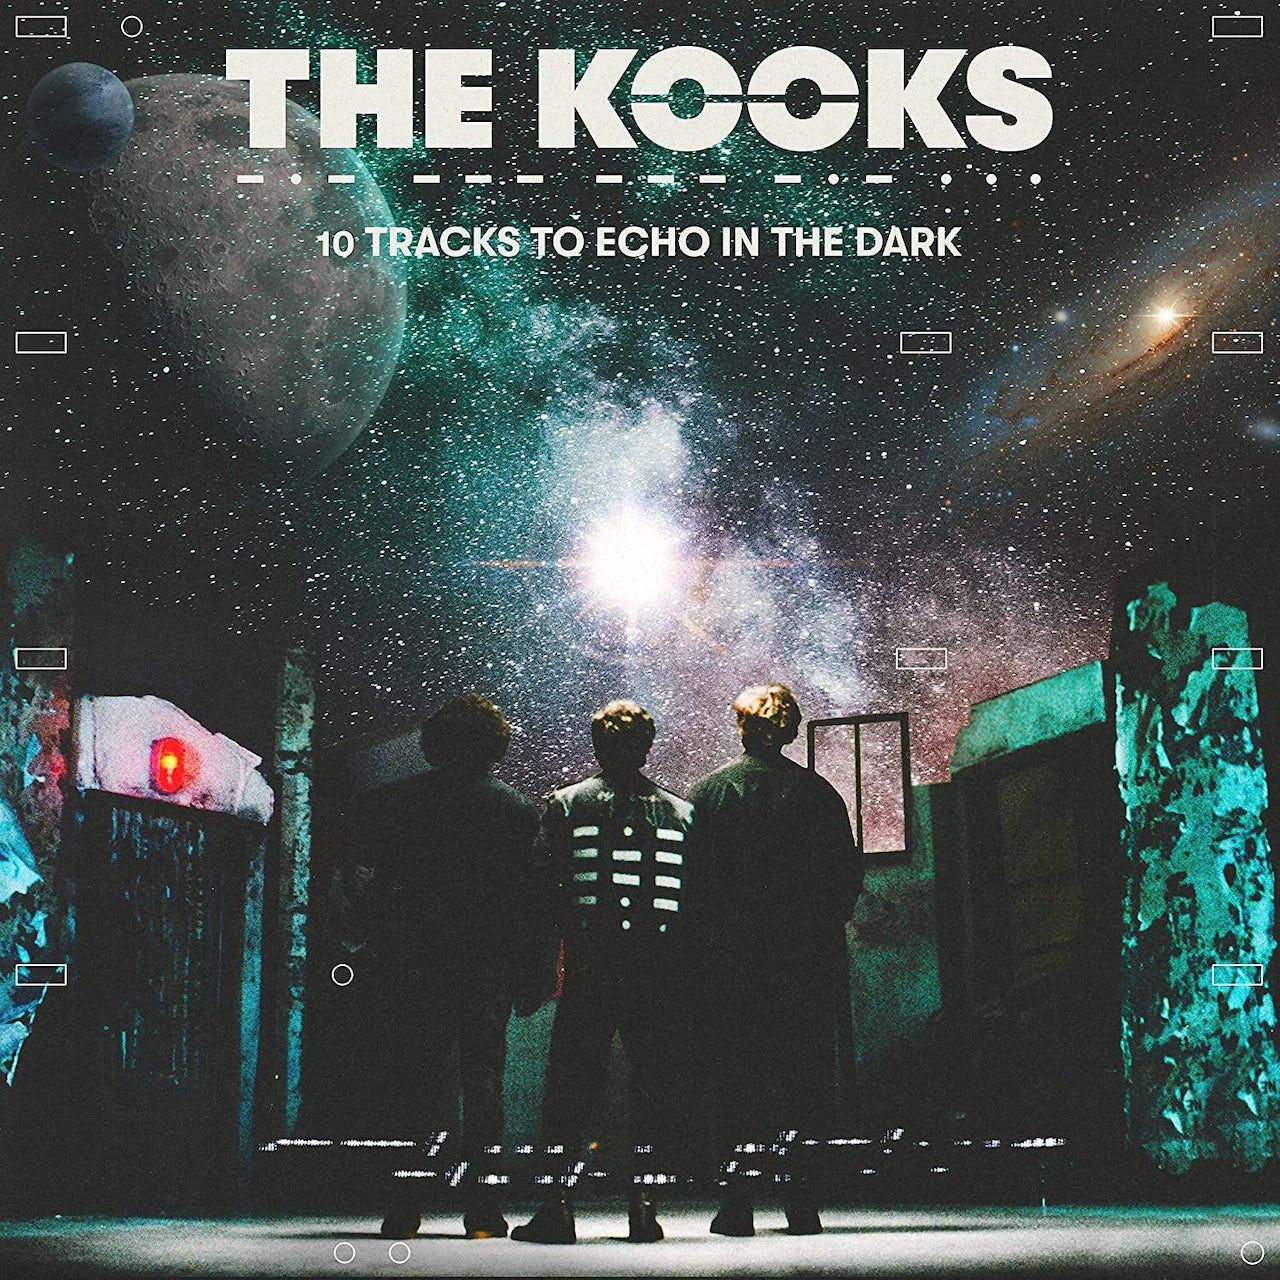 Виниловая пластинка Kooks, The, 10 Tracks To Echo In The Dark (5056167168423) цена и фото